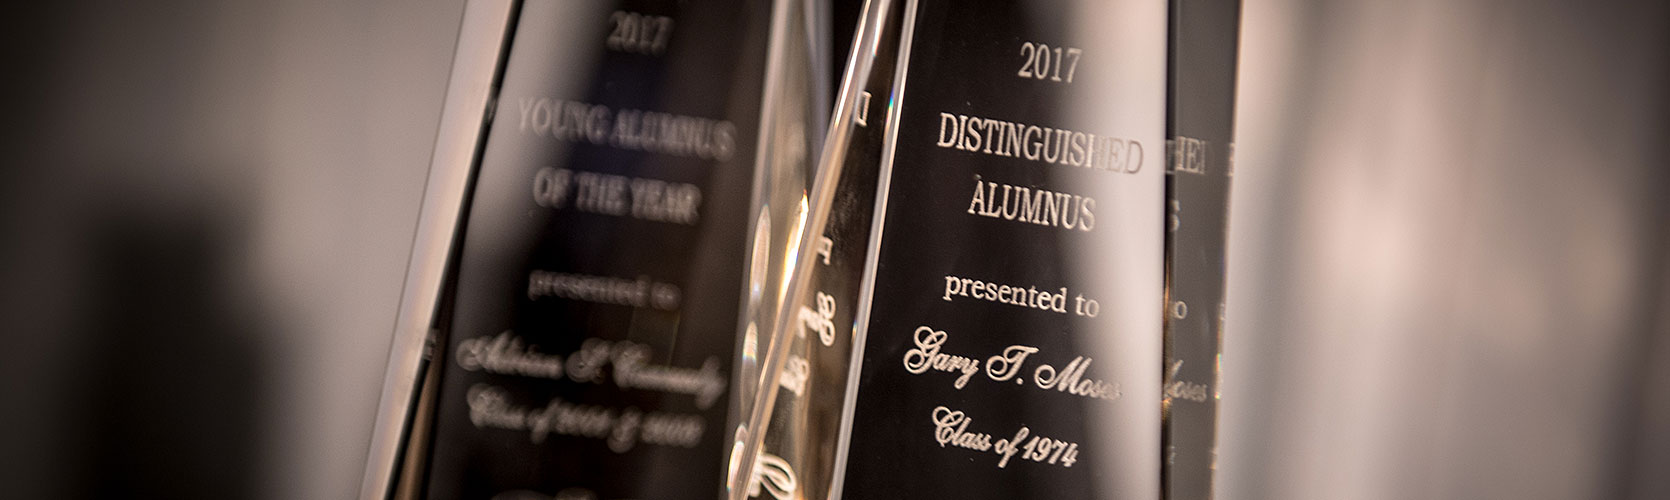 Distinguished Alumnus Awards 2016